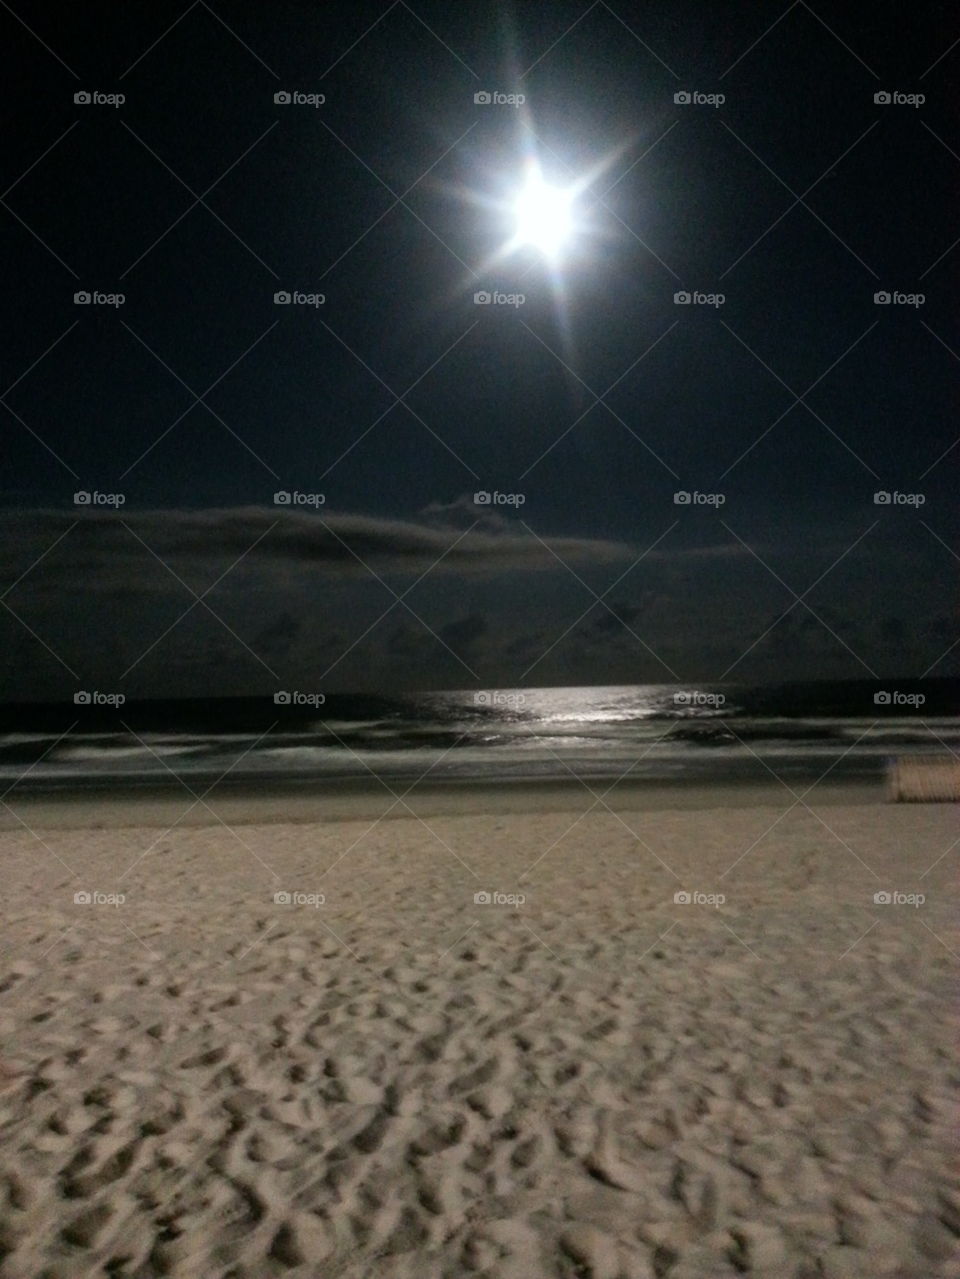 moon beach